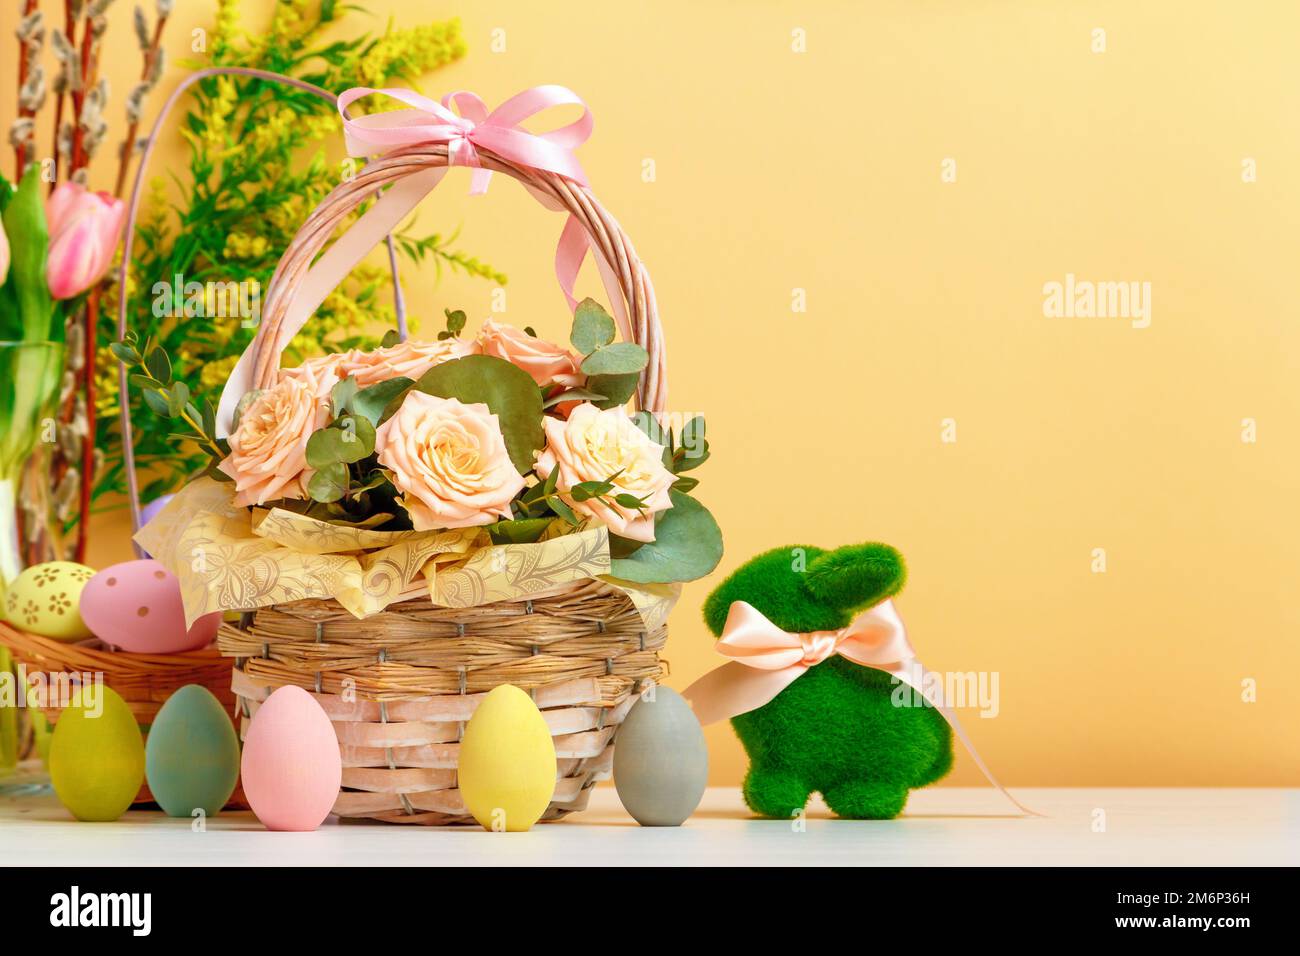 Pâques encore la vie. Un panier avec des fleurs et des œufs, un lapin jouet sur la table. copier l'espace Banque D'Images